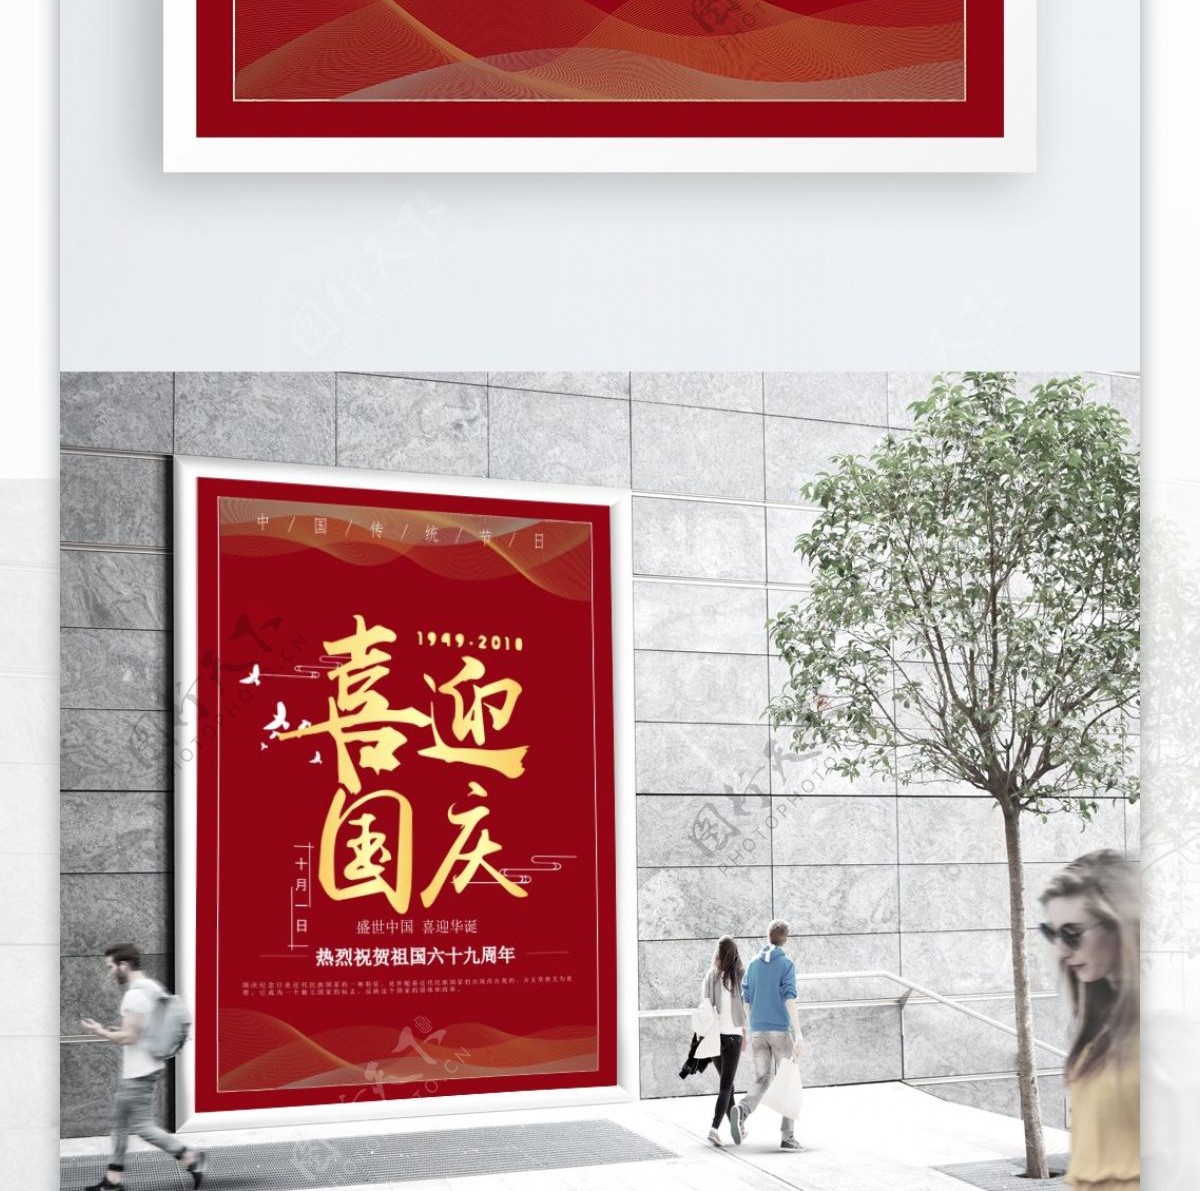 中国传统节日国庆节海报